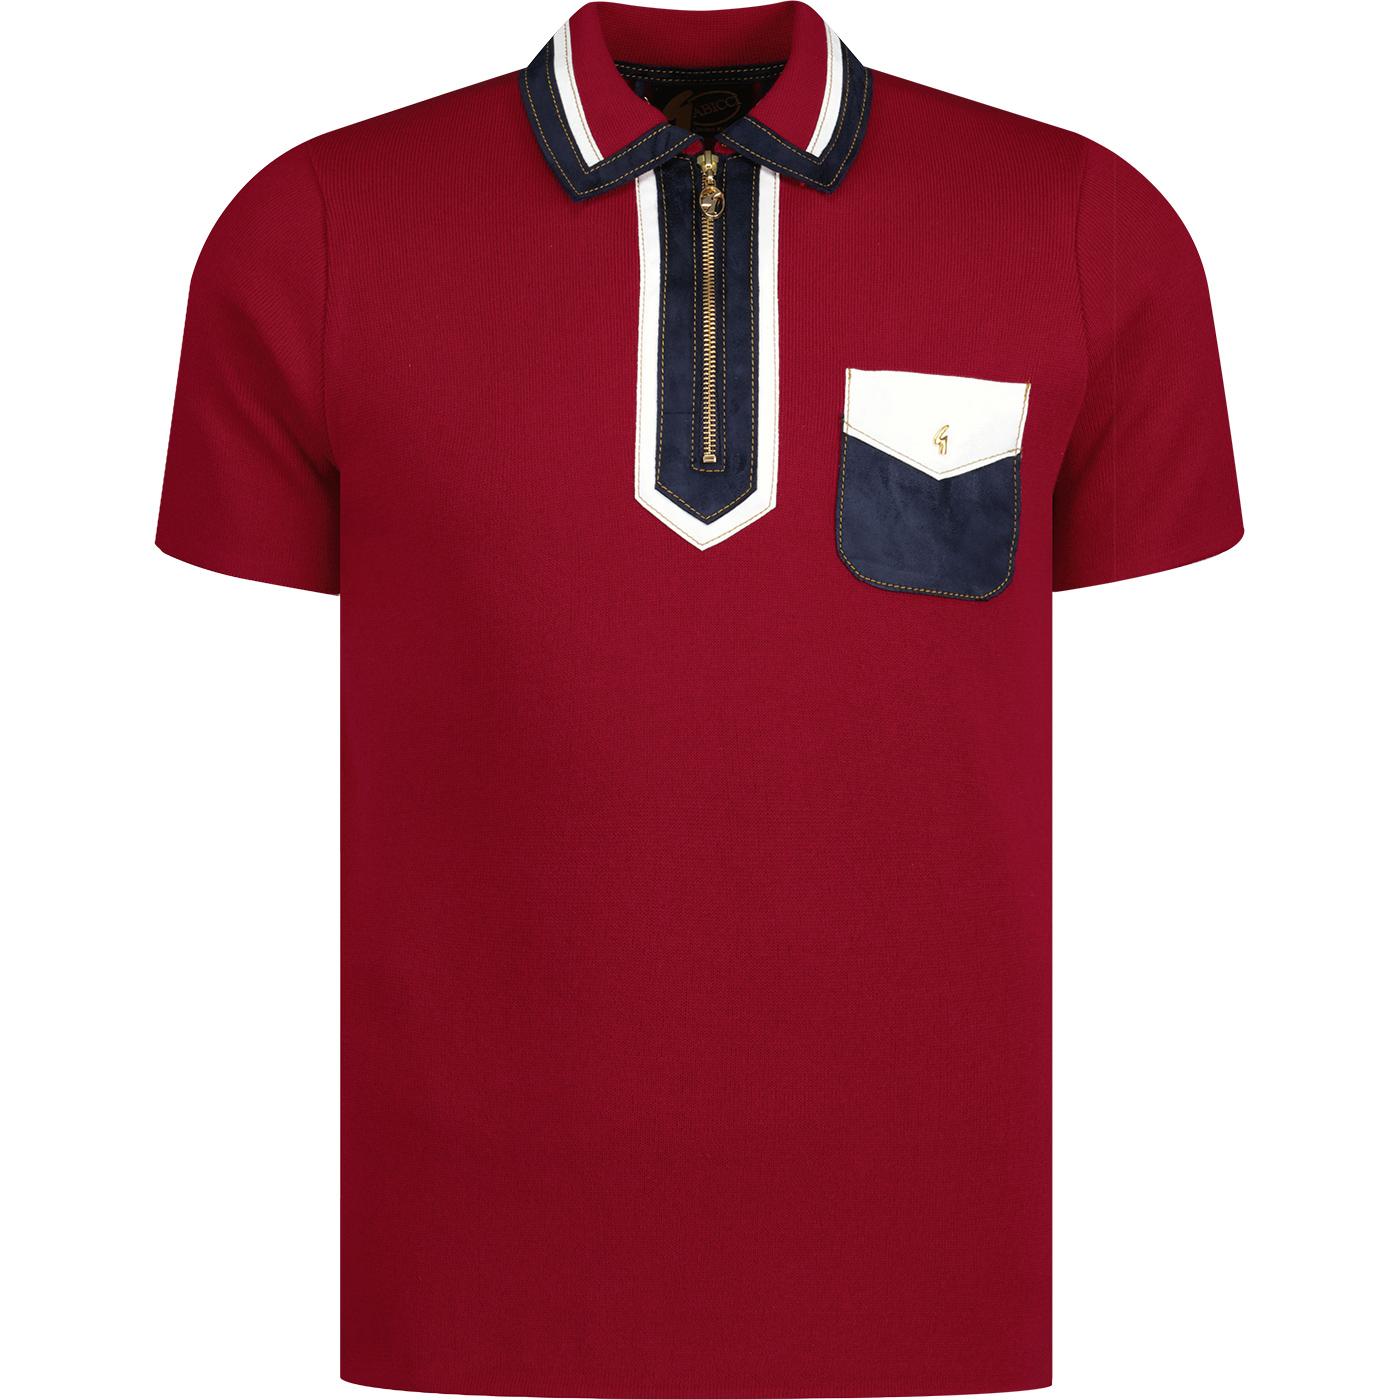 Ladd GABICCI VINTAGE Mod Ltd Edition Knit Polo RED